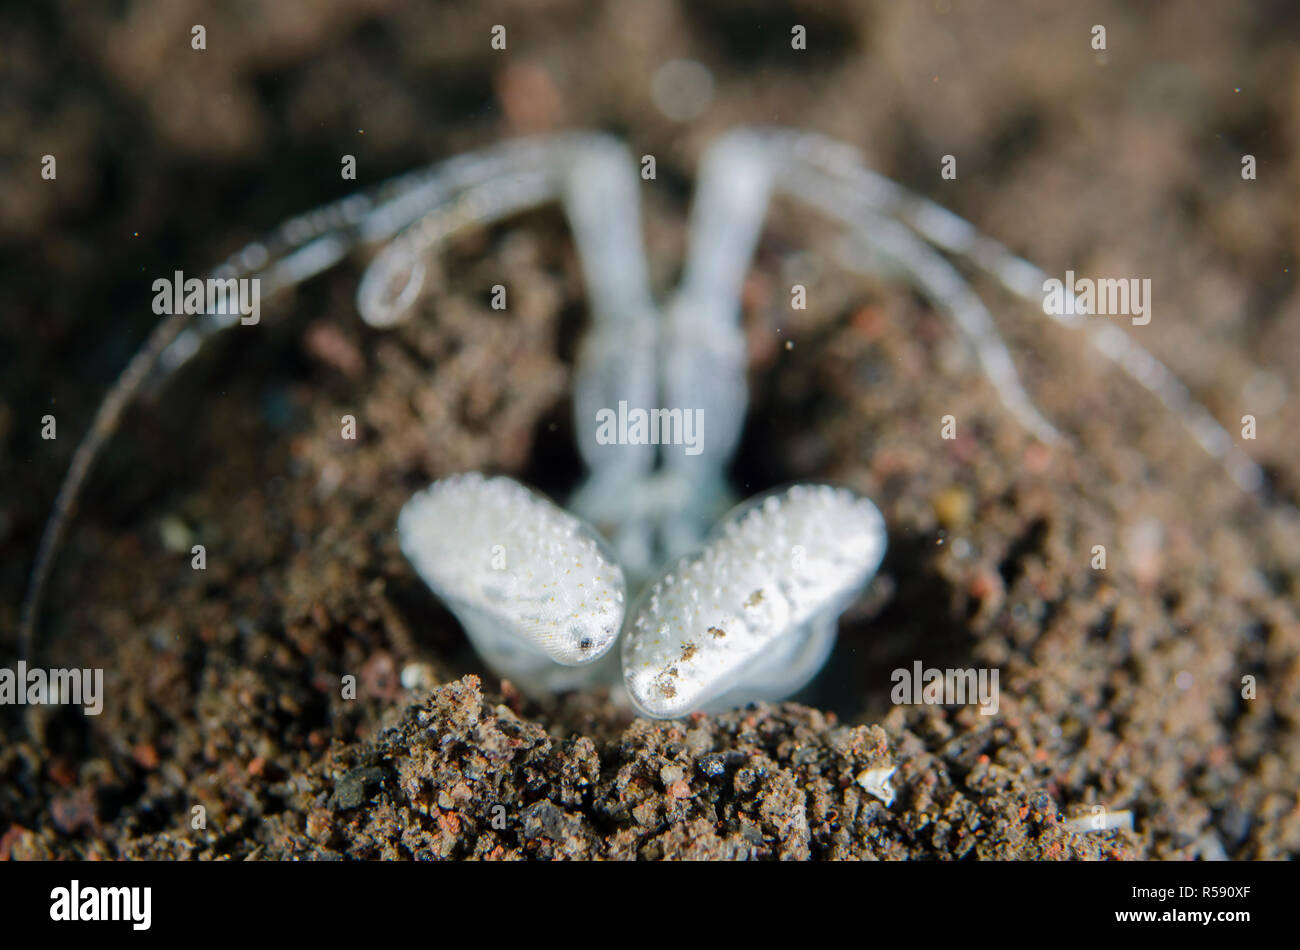 Crevette Lysiosquillina Mantis Spearing, sp, dans le trou dans le sable, Pong Pong dive site, Seraya, Bali, Indonésie, l'Océan Indien Banque D'Images